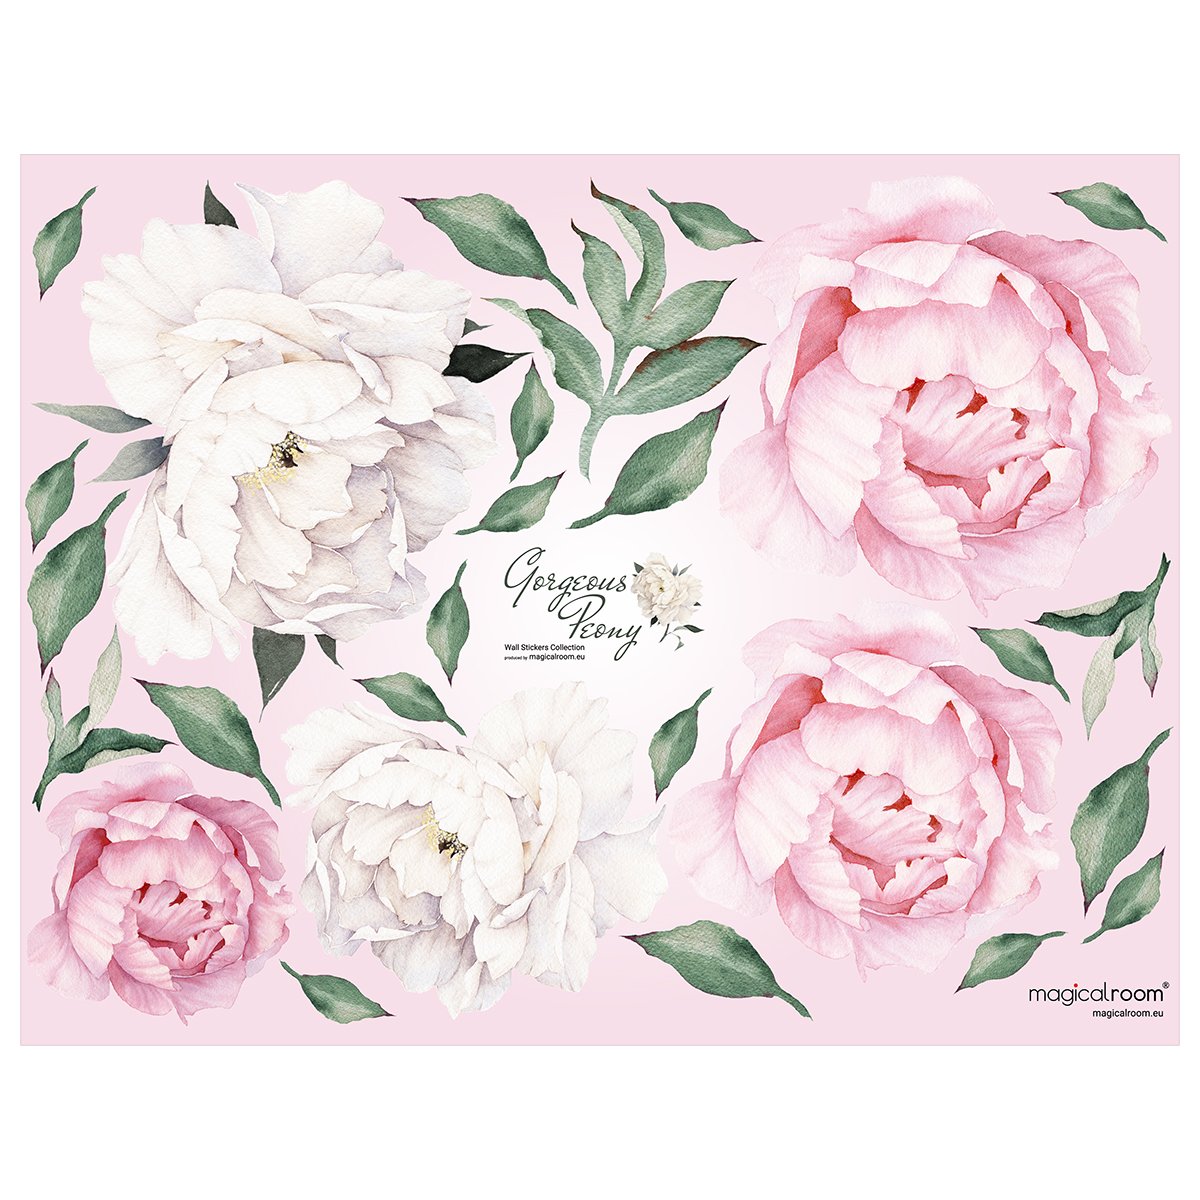 Naklejki na ścianę różowe i białe kwiaty do sypialni#kolor_rozowy